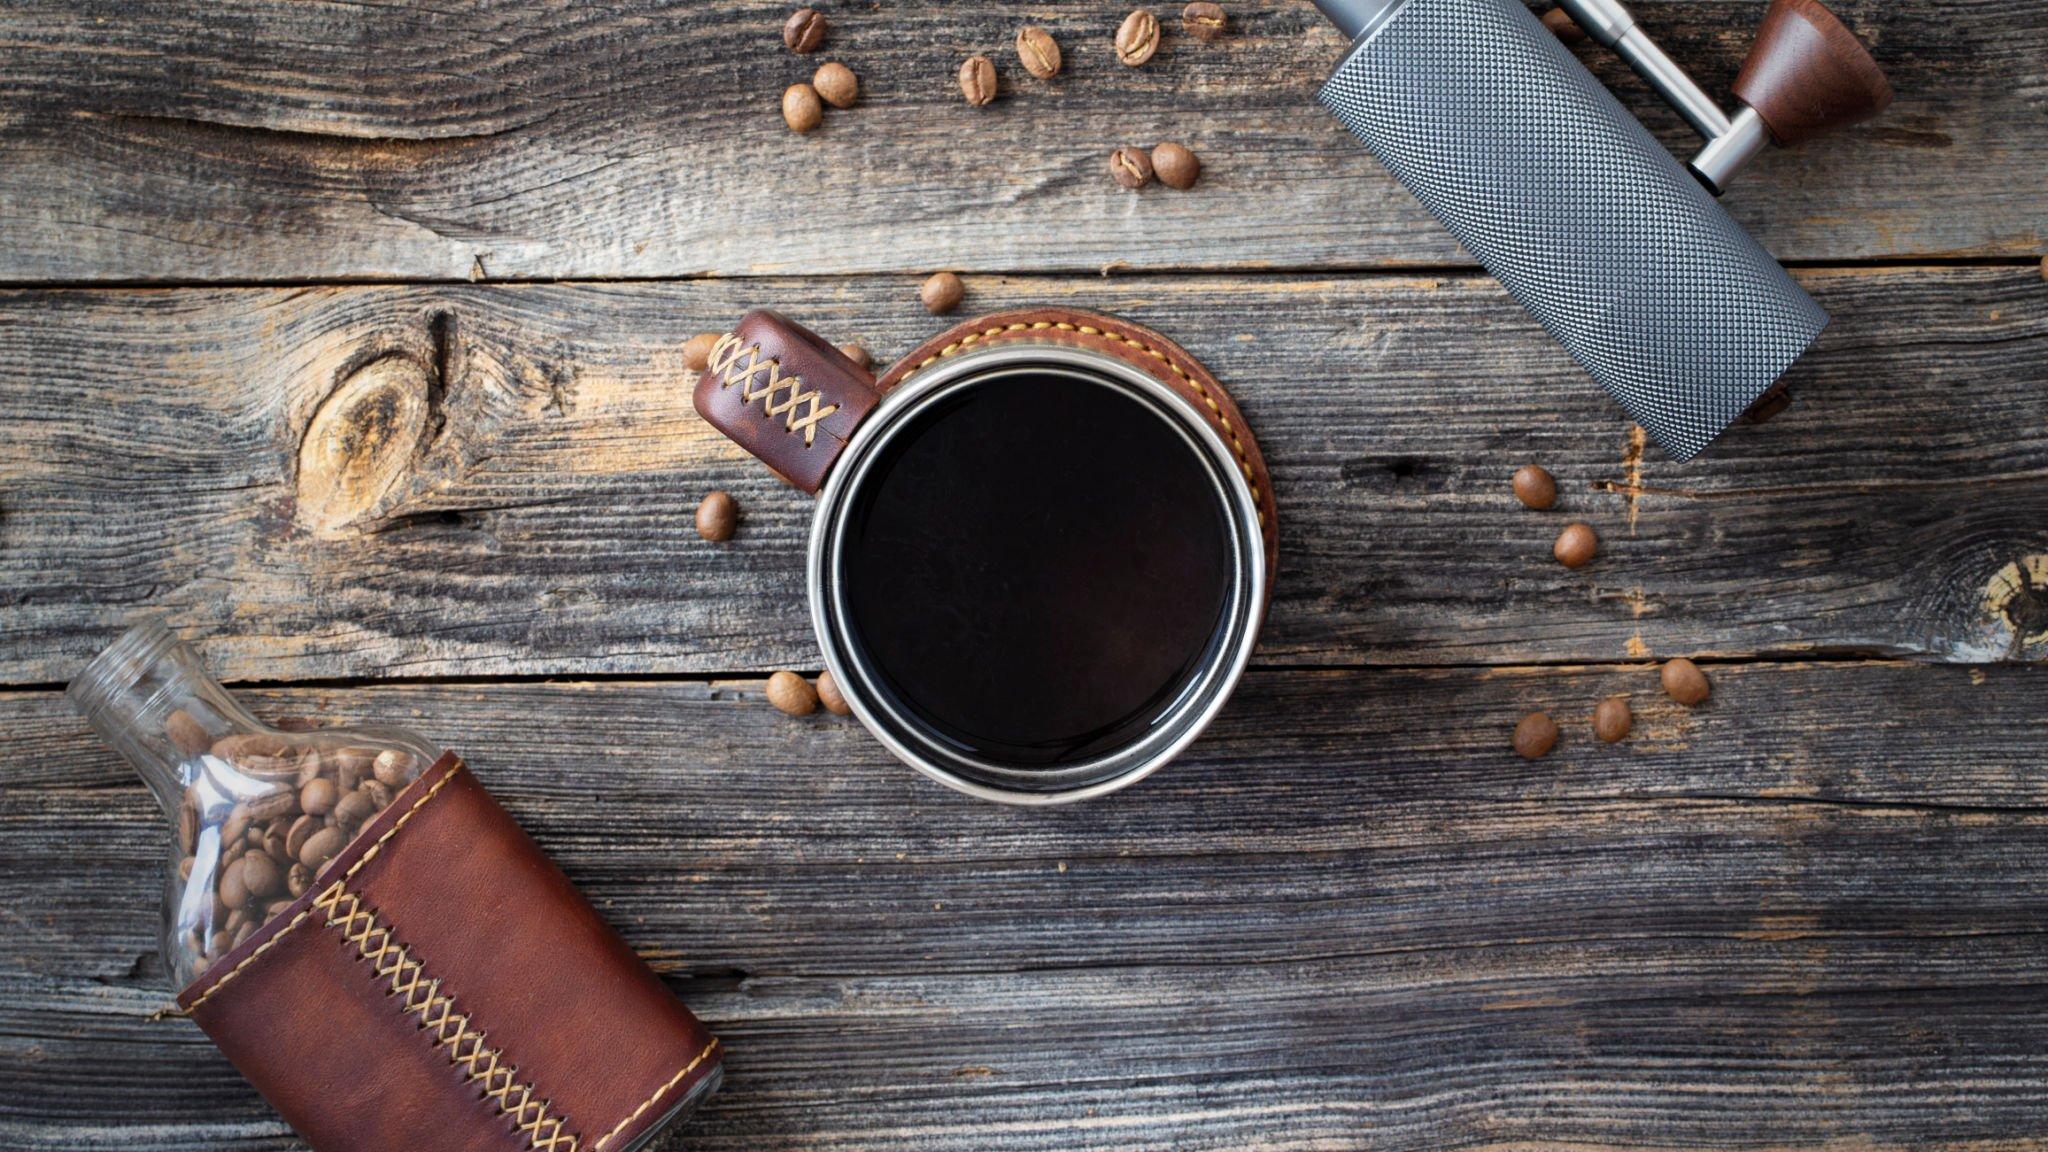 Organic vs Non-Organic Coffee: Comparing Taste, Benefits & More